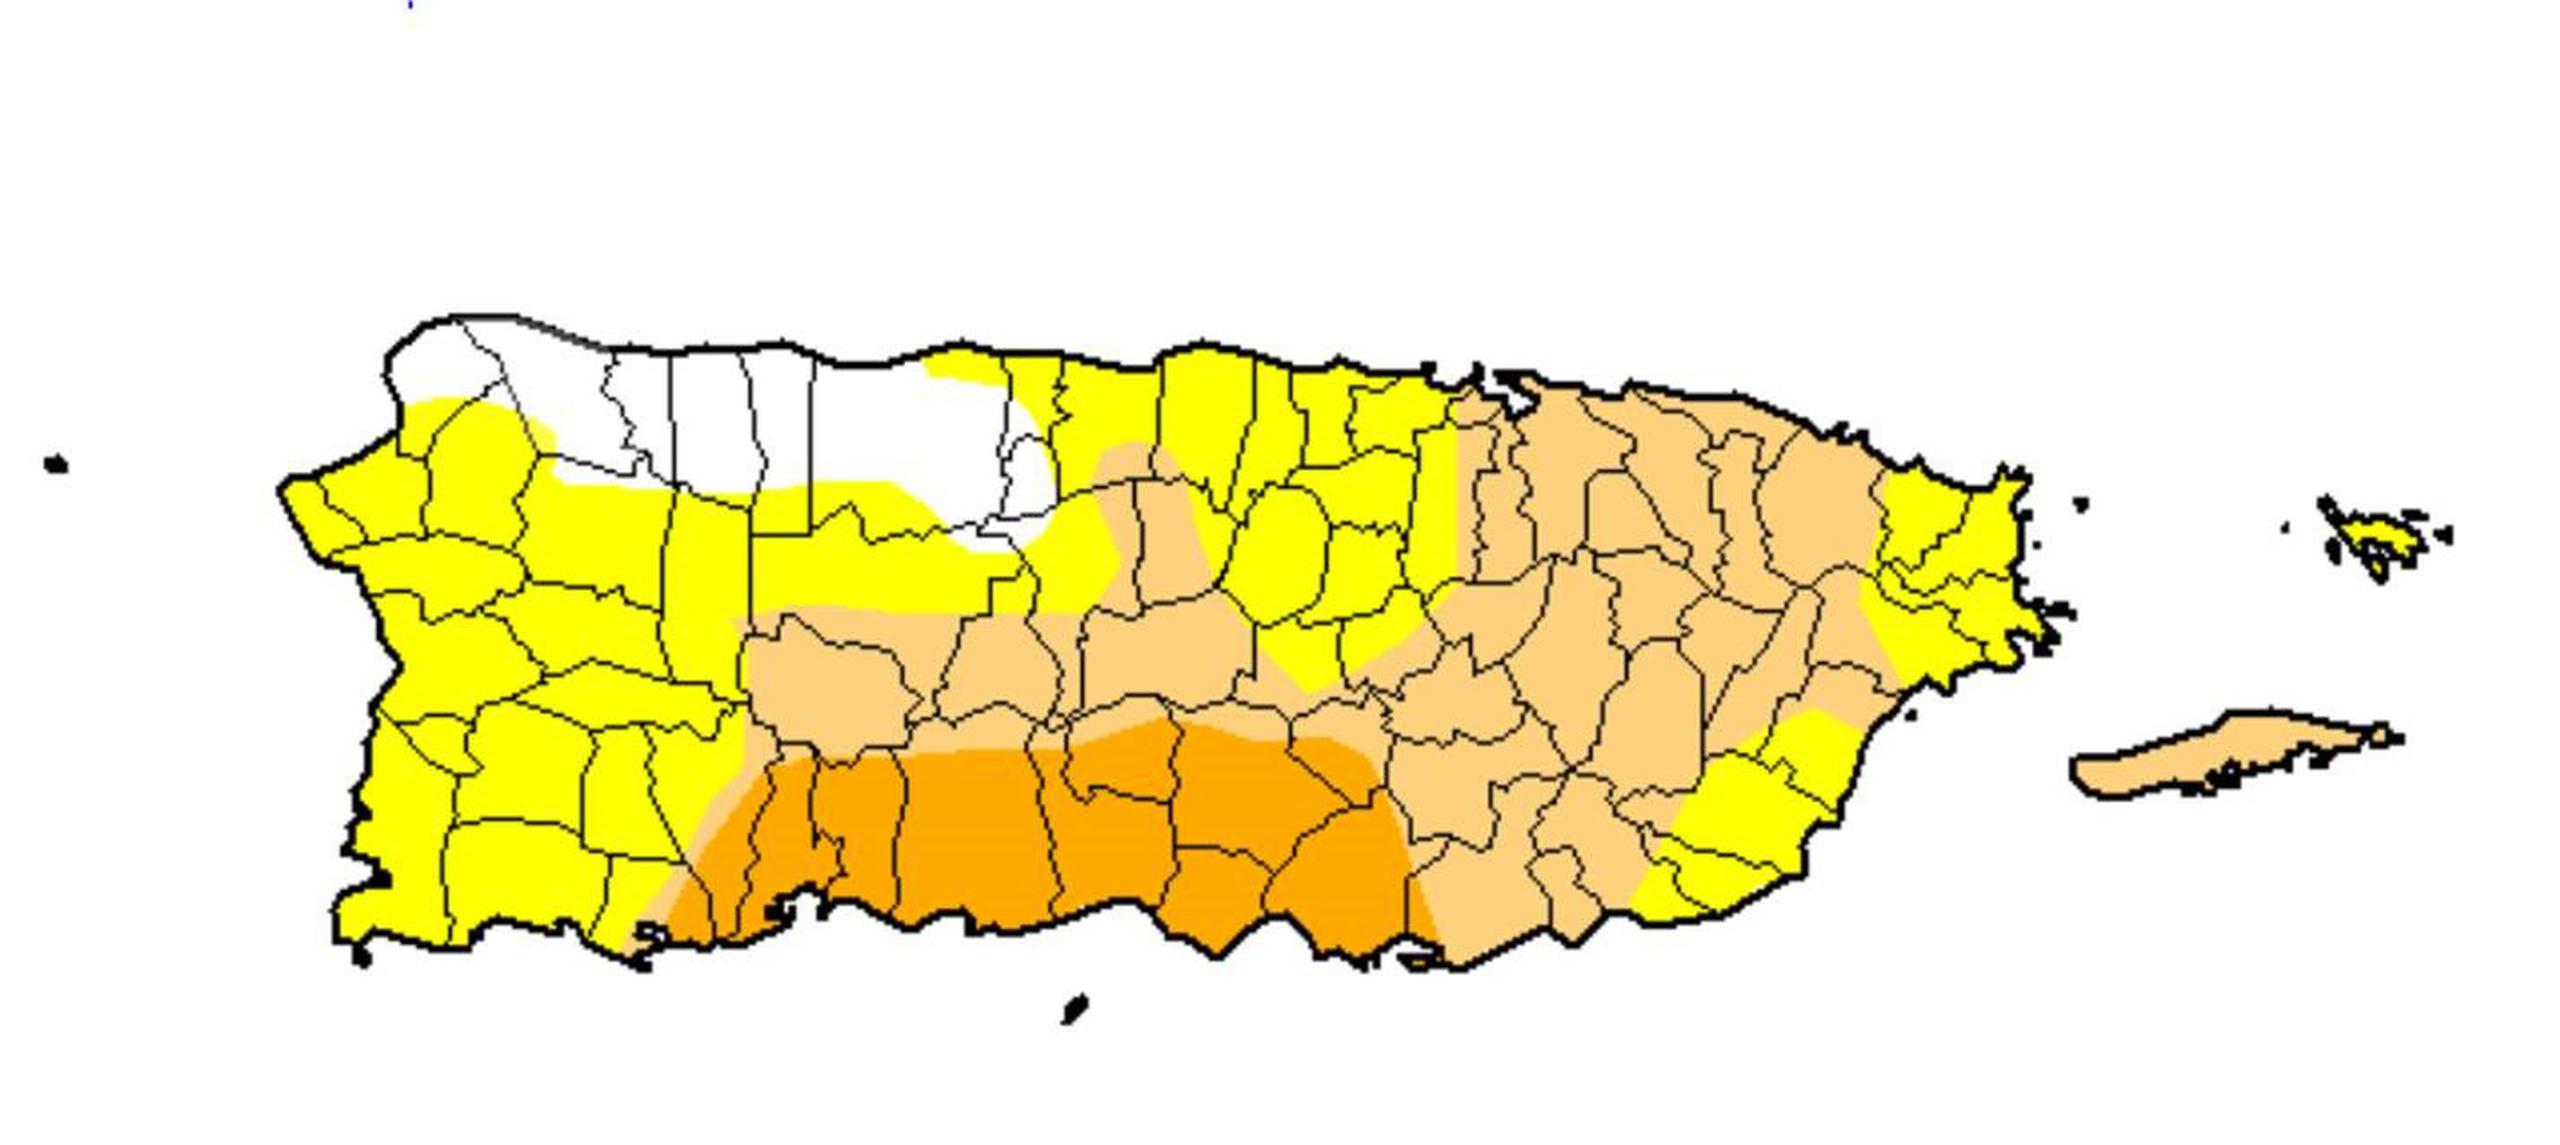 Mapa publicado este jueves por el Monitor de Sequía de los Estados Unidos. Las áreas de anaranjado intenso están en sequía severa, las cremas en sequía moderada y las amarillas en sequía atípica.